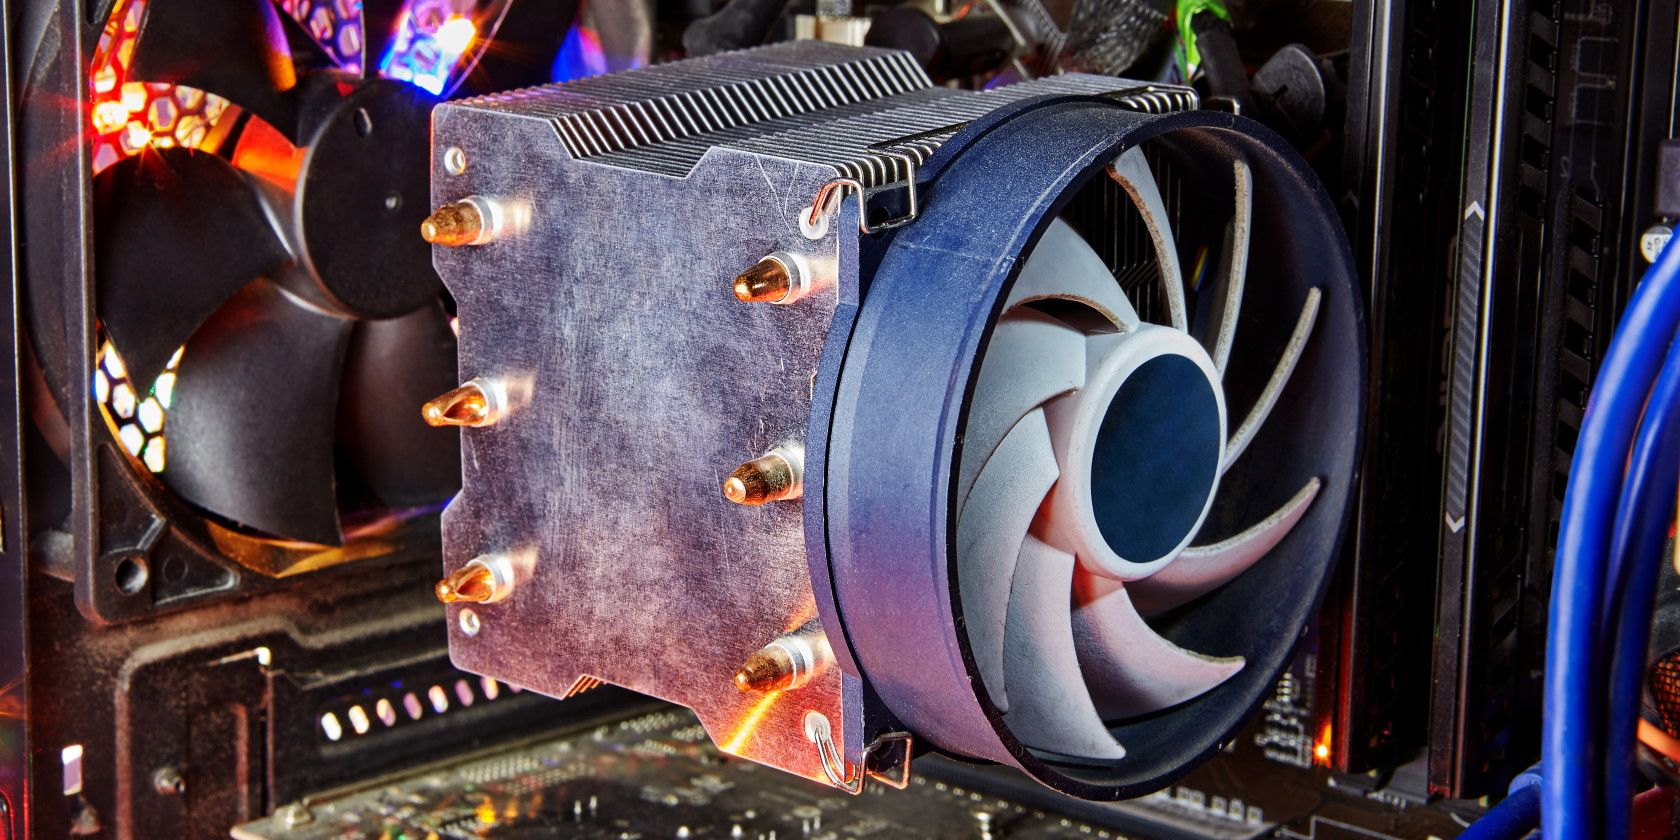 CPU fan shown inside a desktop PC case